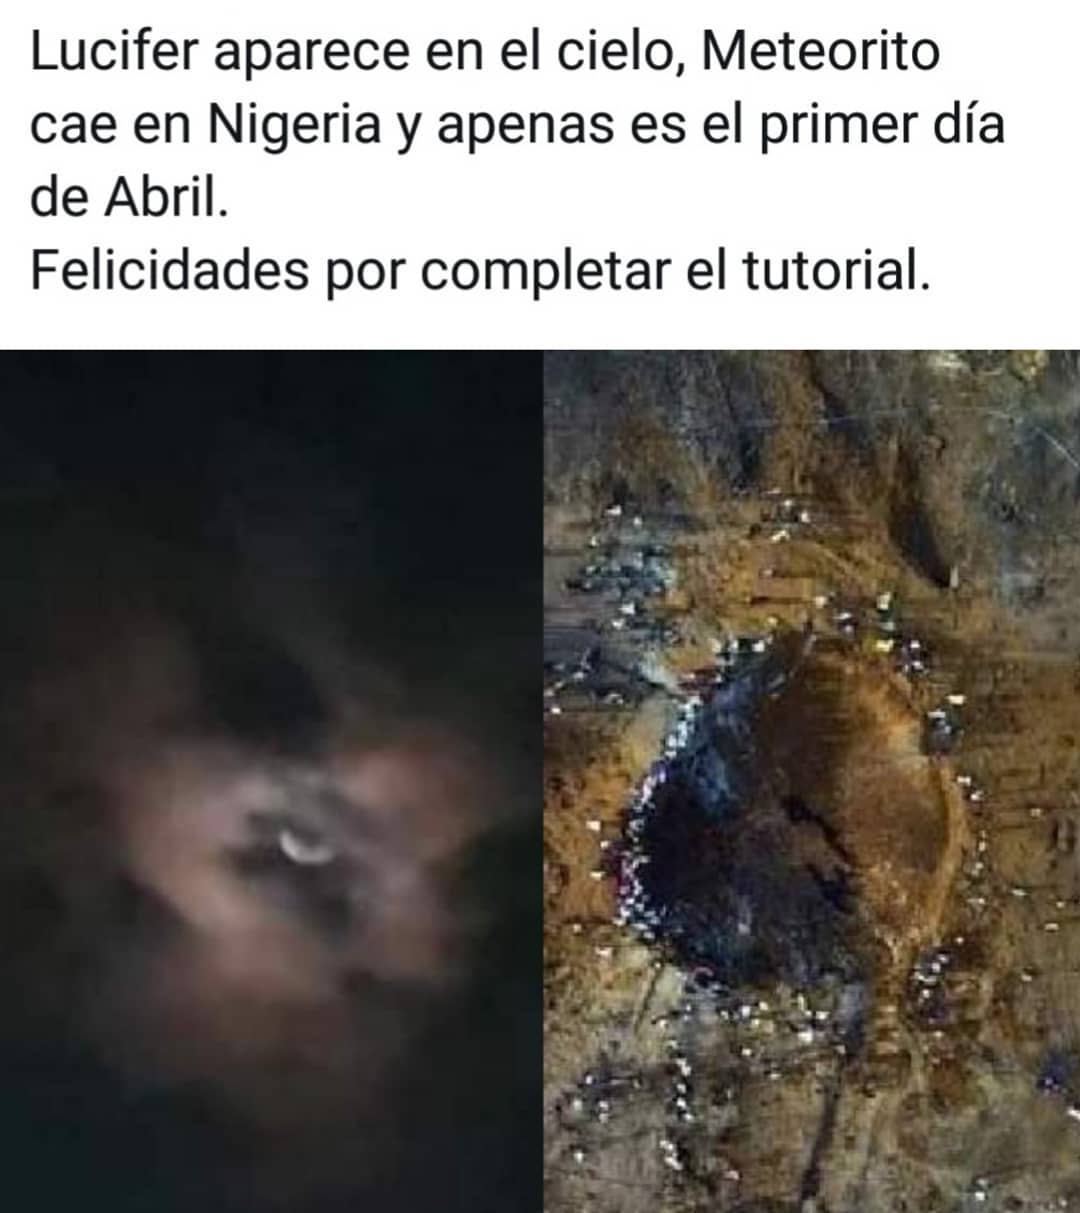 Lucifer aparece en el cielo, Meteorito cae en Nigeria y apenas es el primer día de Abril.  Felicidades por completar el tutorial.